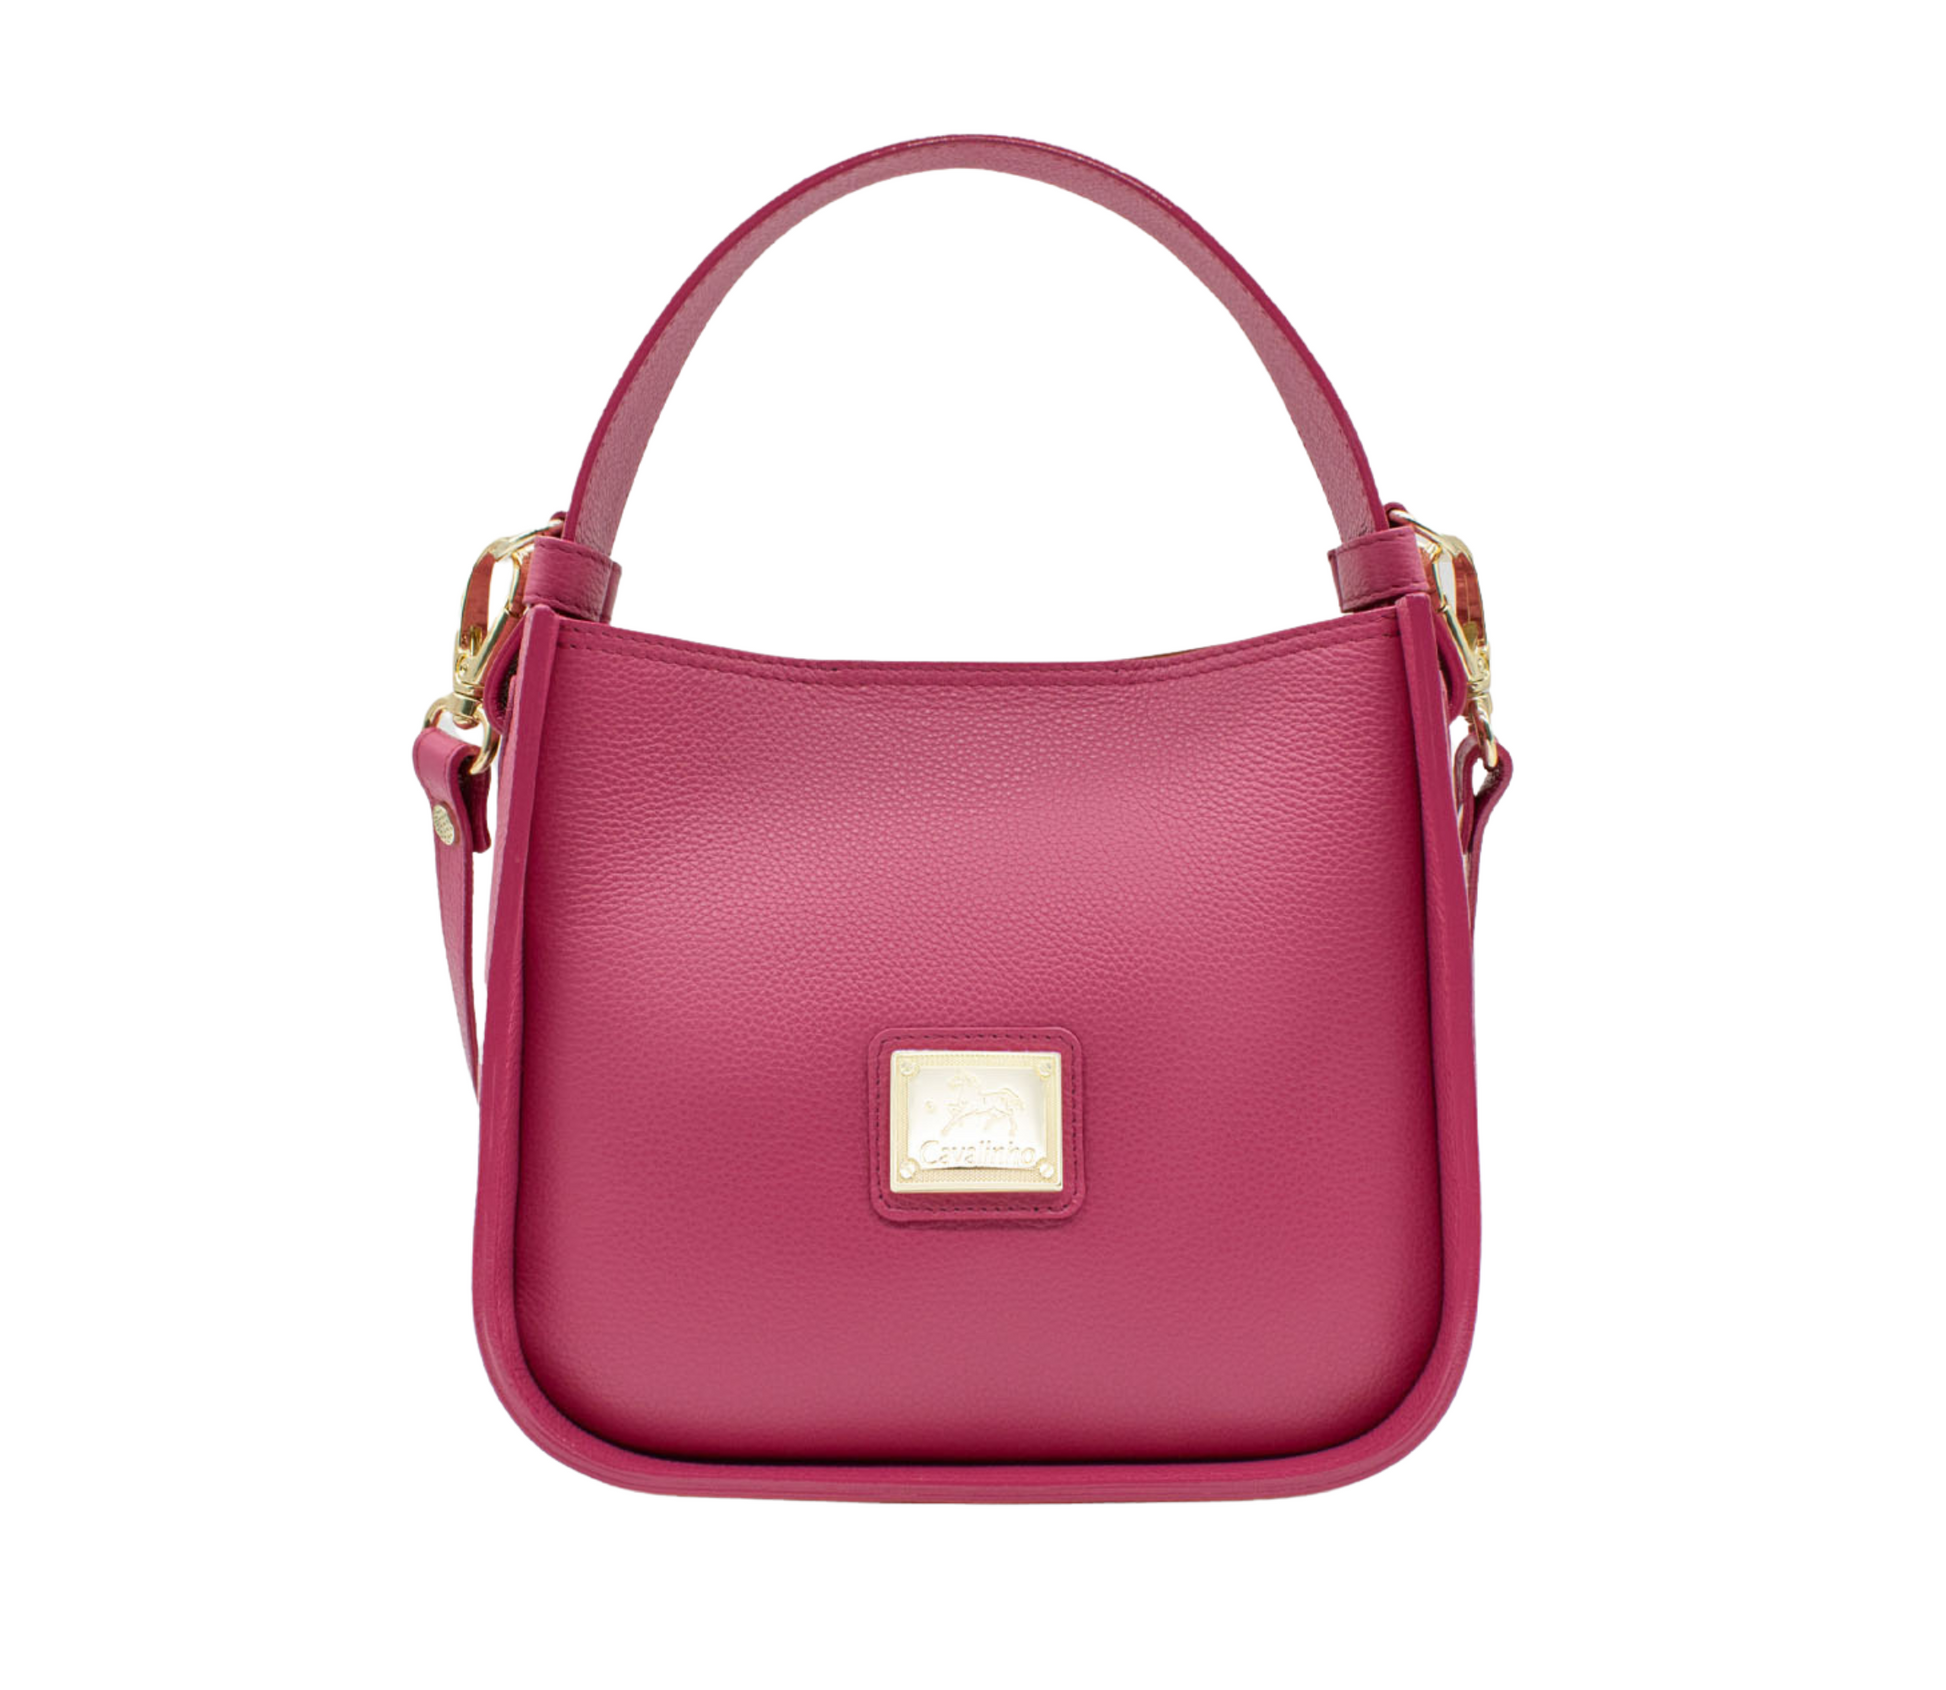 Cavalinho Muse Leather Handbag - HotPink - 18300475.18_P01